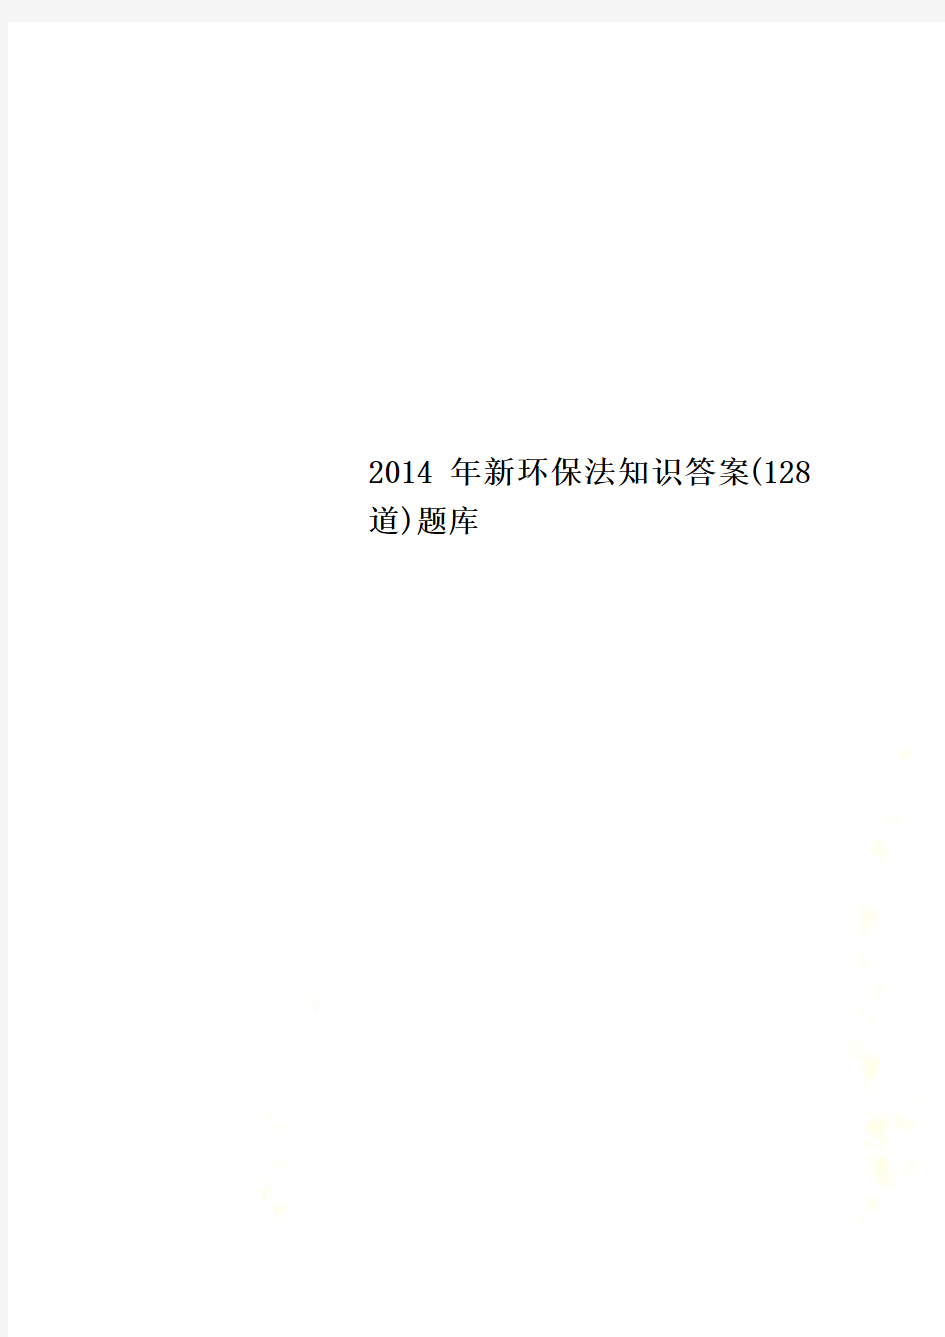 2014年新环保法知识答案(128道)题库